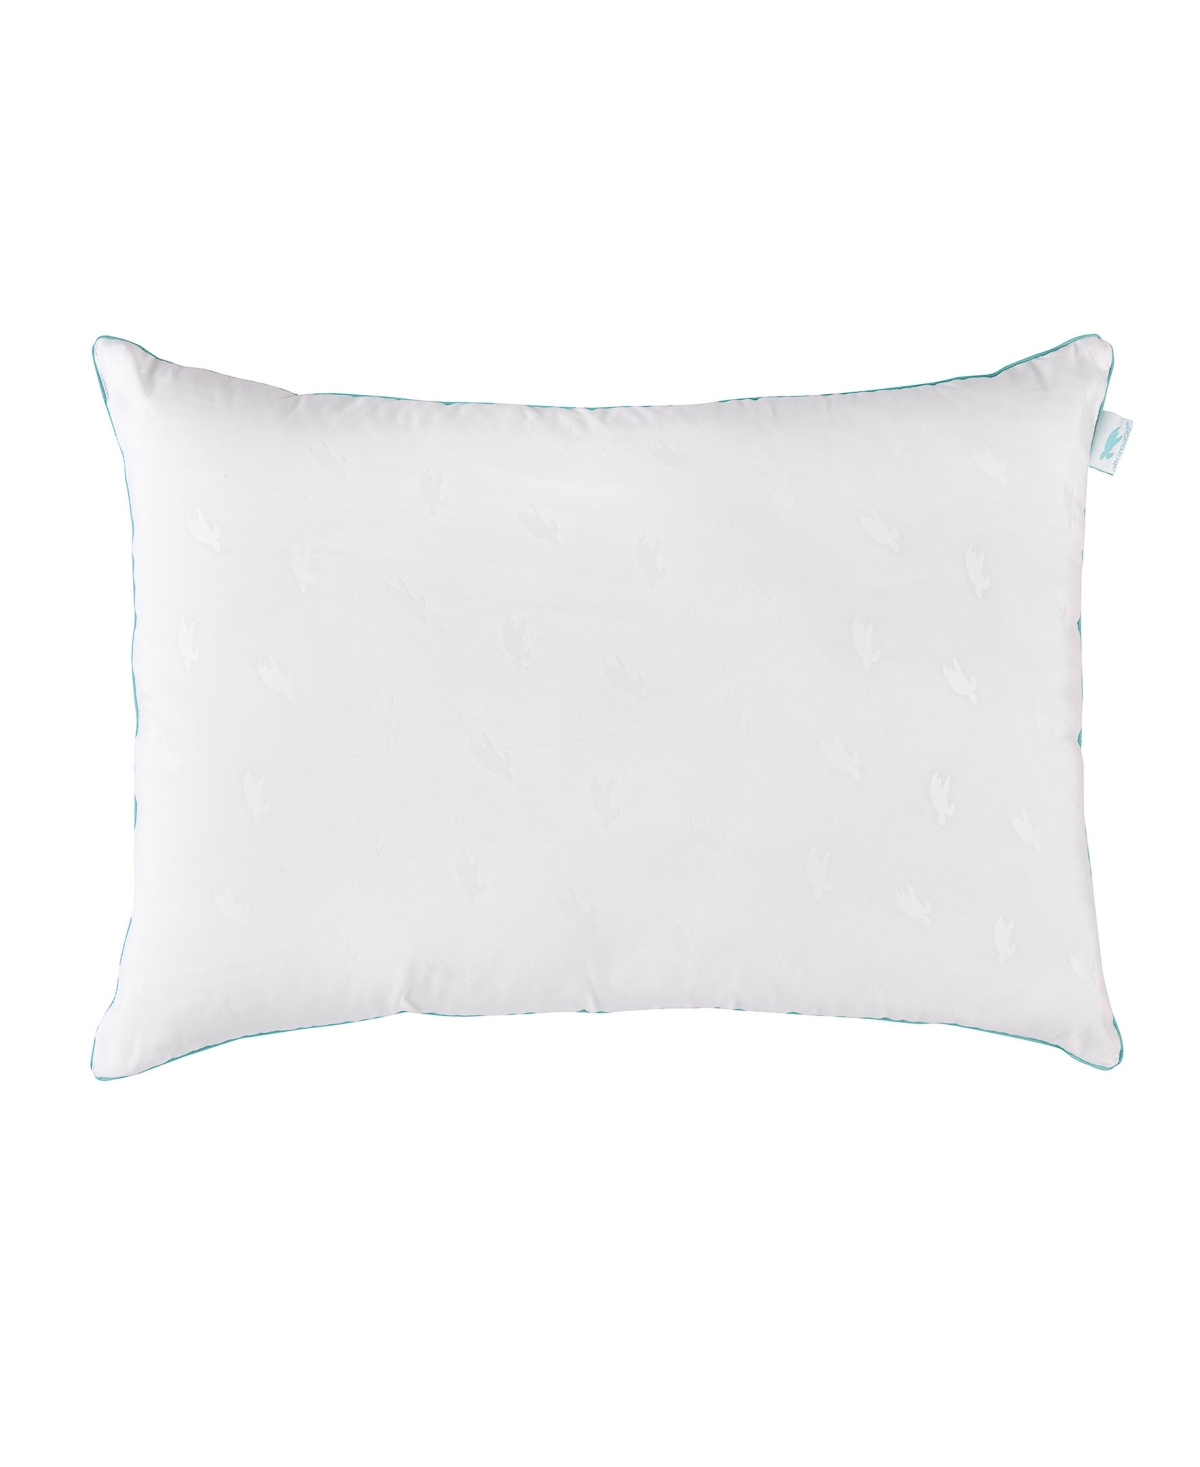 AllerEase Blue Pillow, Standard/Queen